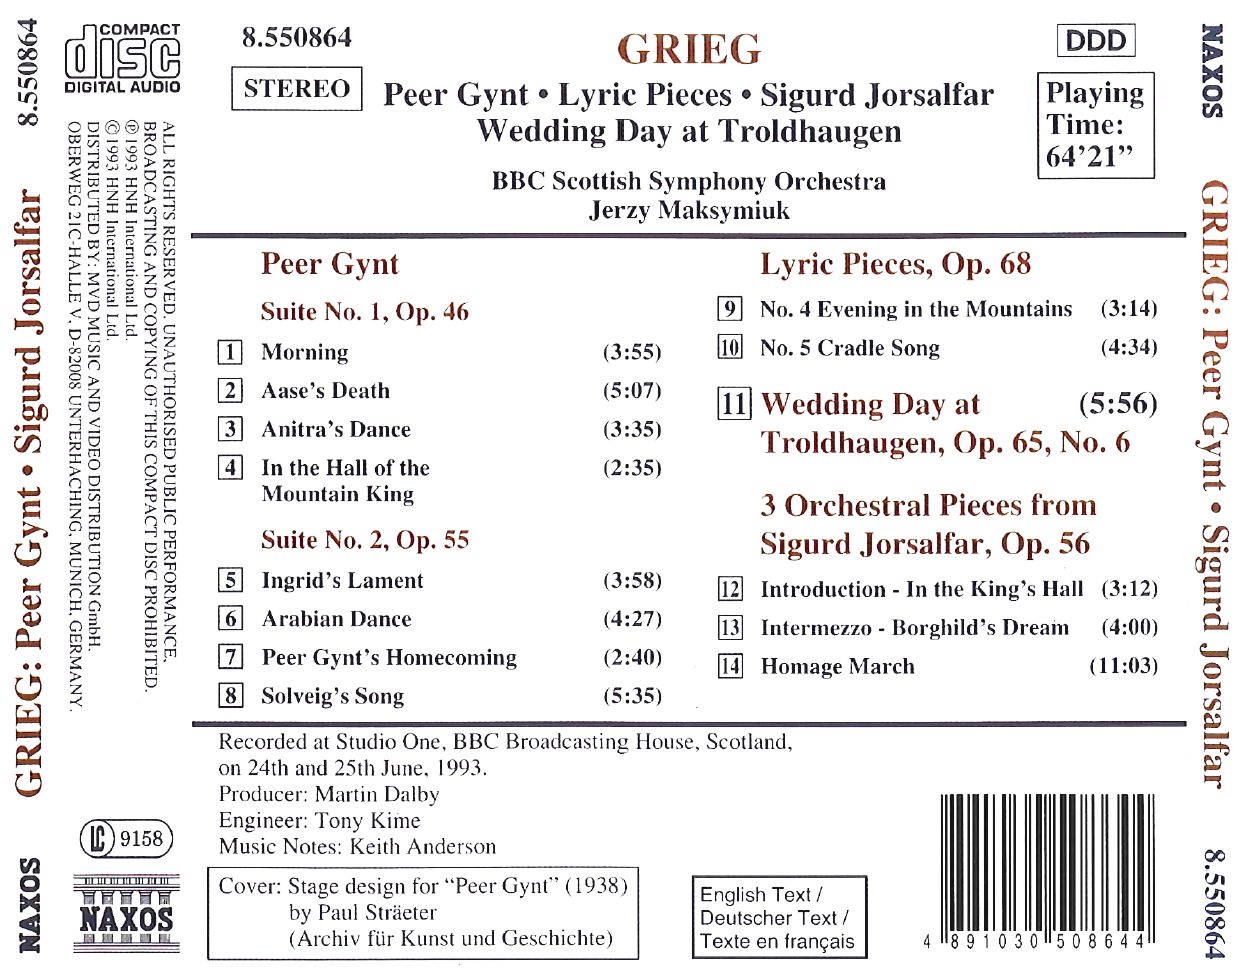 Grieg, Edvard: Peer Gynt, Lyric Pieces, Sigurd Jorsalfar - slide-1